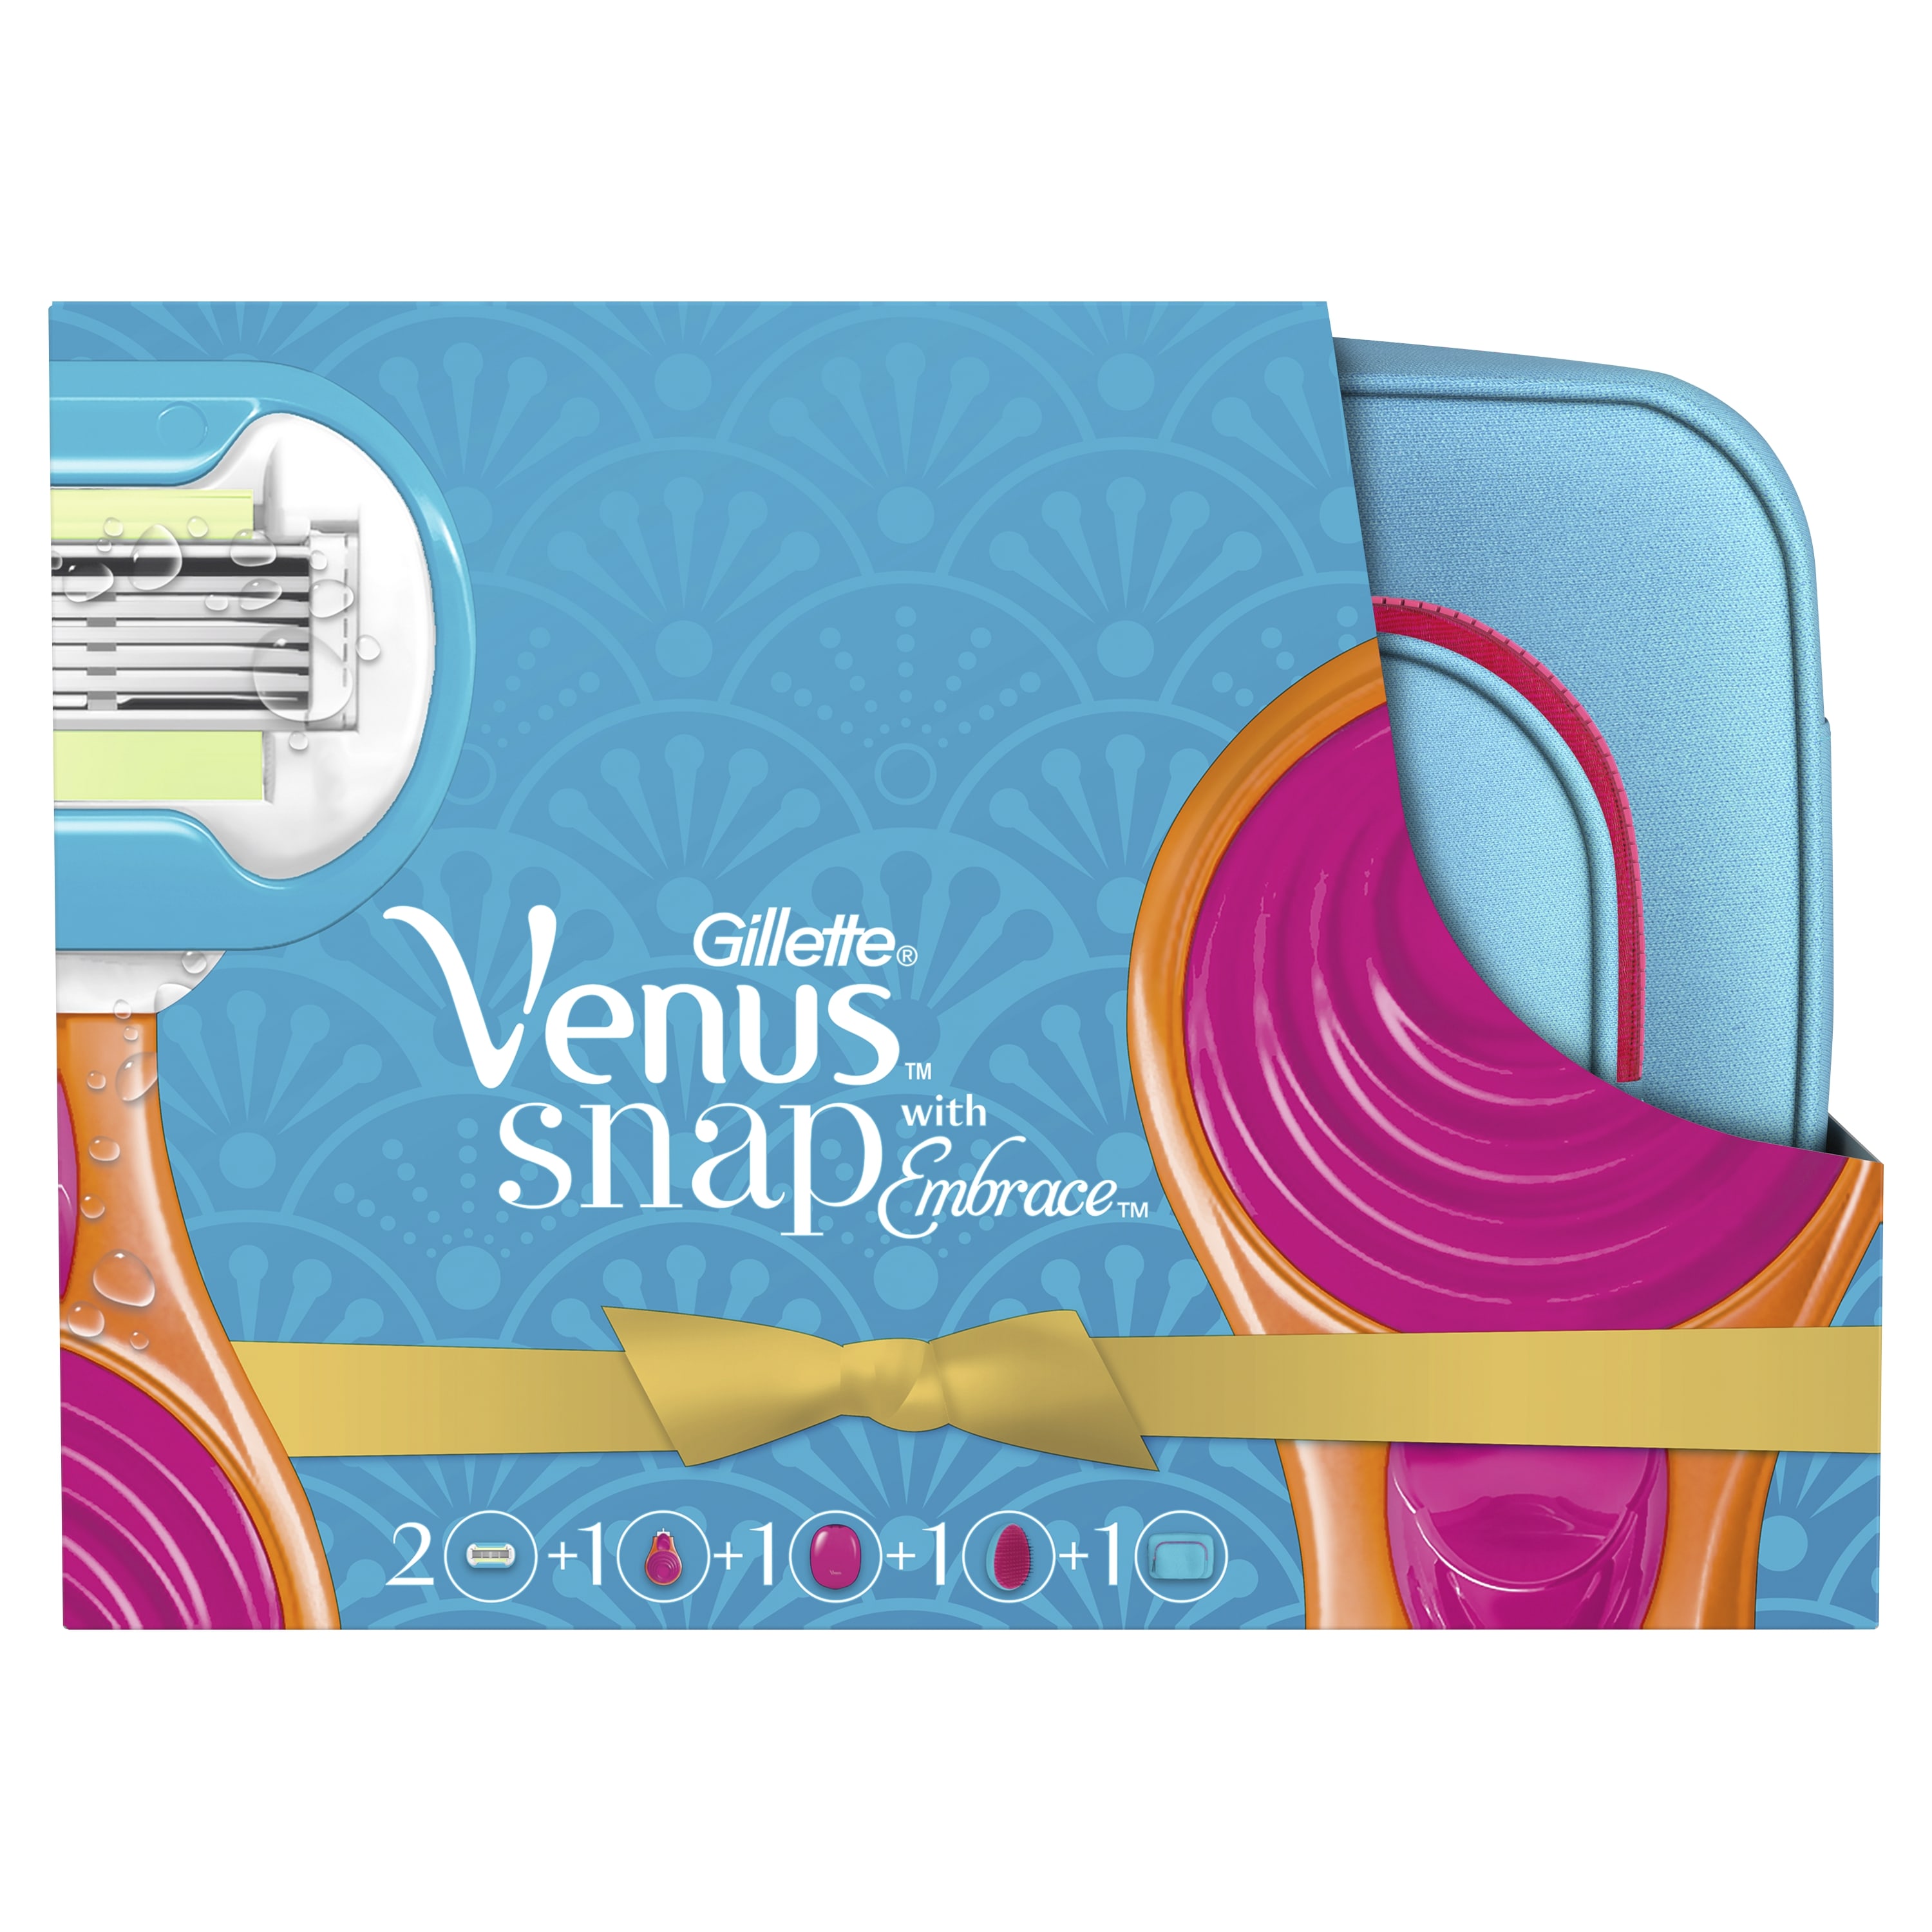 Подарочный набор VENUS Snap Embrace бритва с 1 сменной кассетой+косметичка+расческа gillette компактная бритва с 1 сменной кассетой venus snap embrace